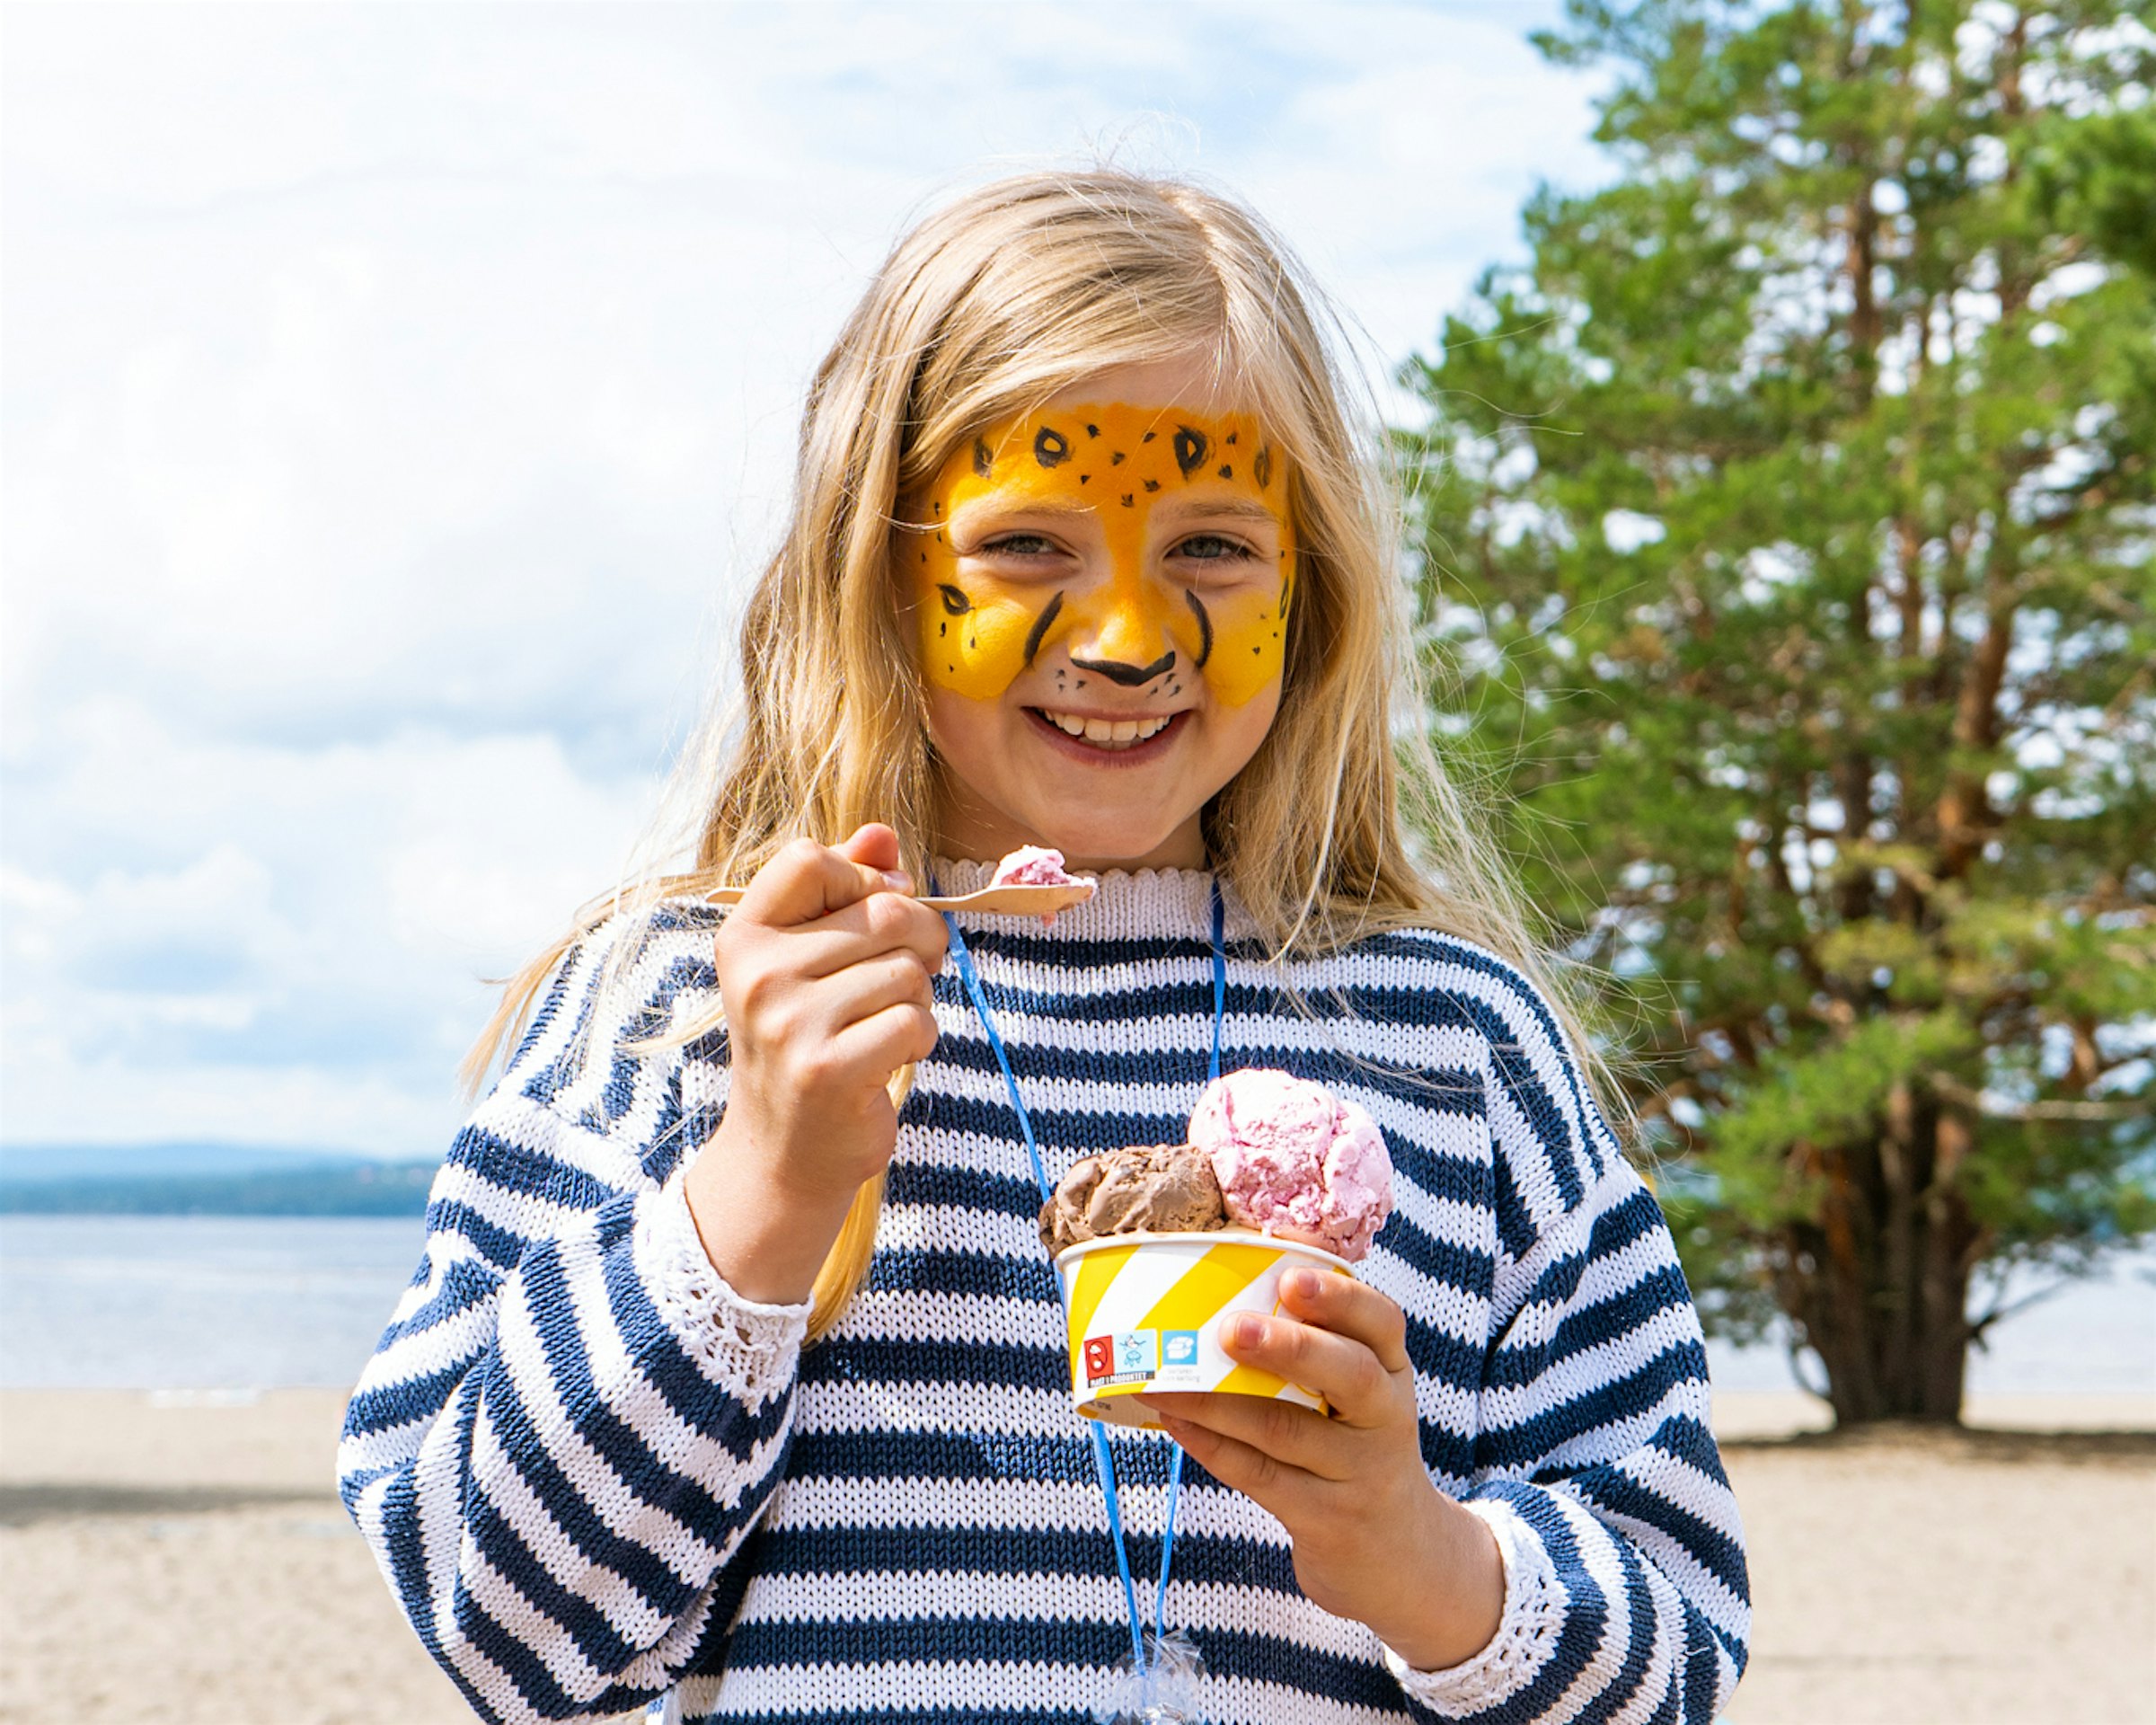 Mädchen hat ihr Gesicht bemalt, isst Eis und lächelt. Foto